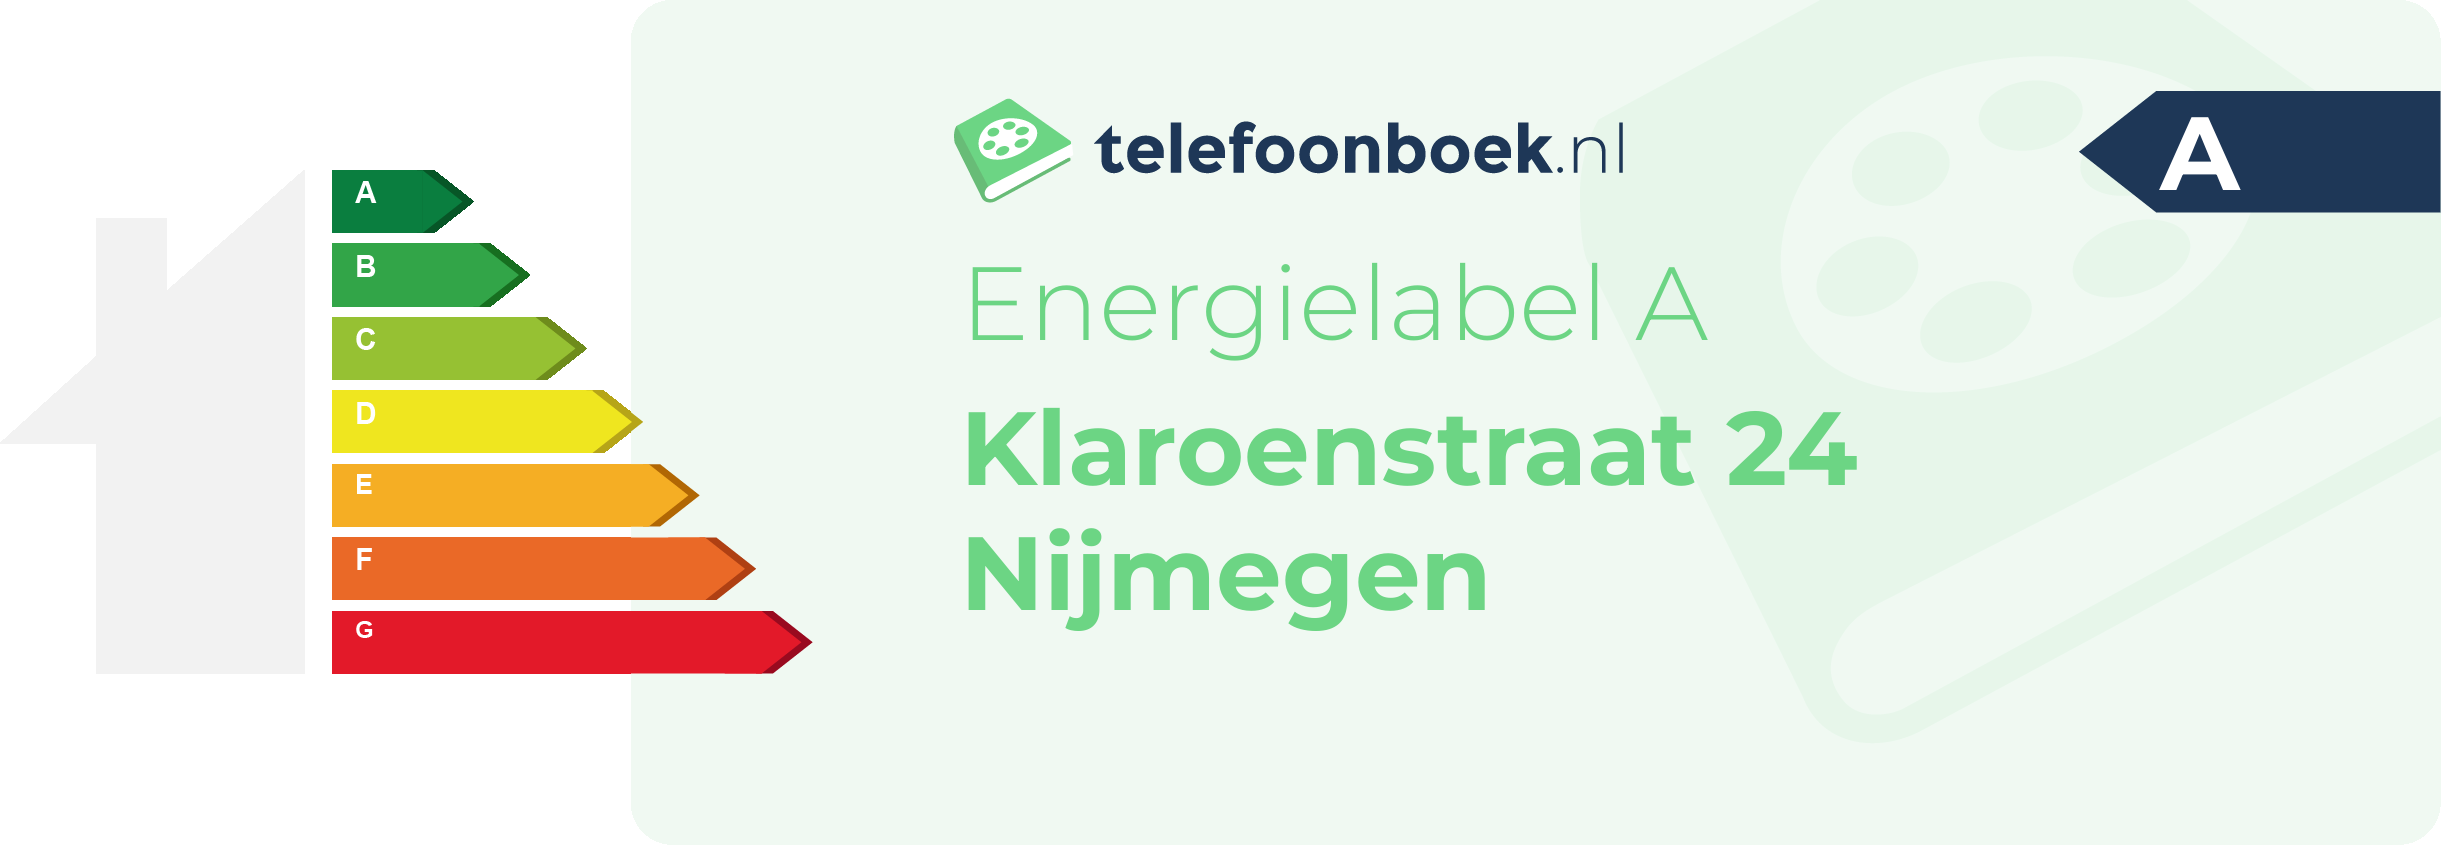 Energielabel Klaroenstraat 24 Nijmegen